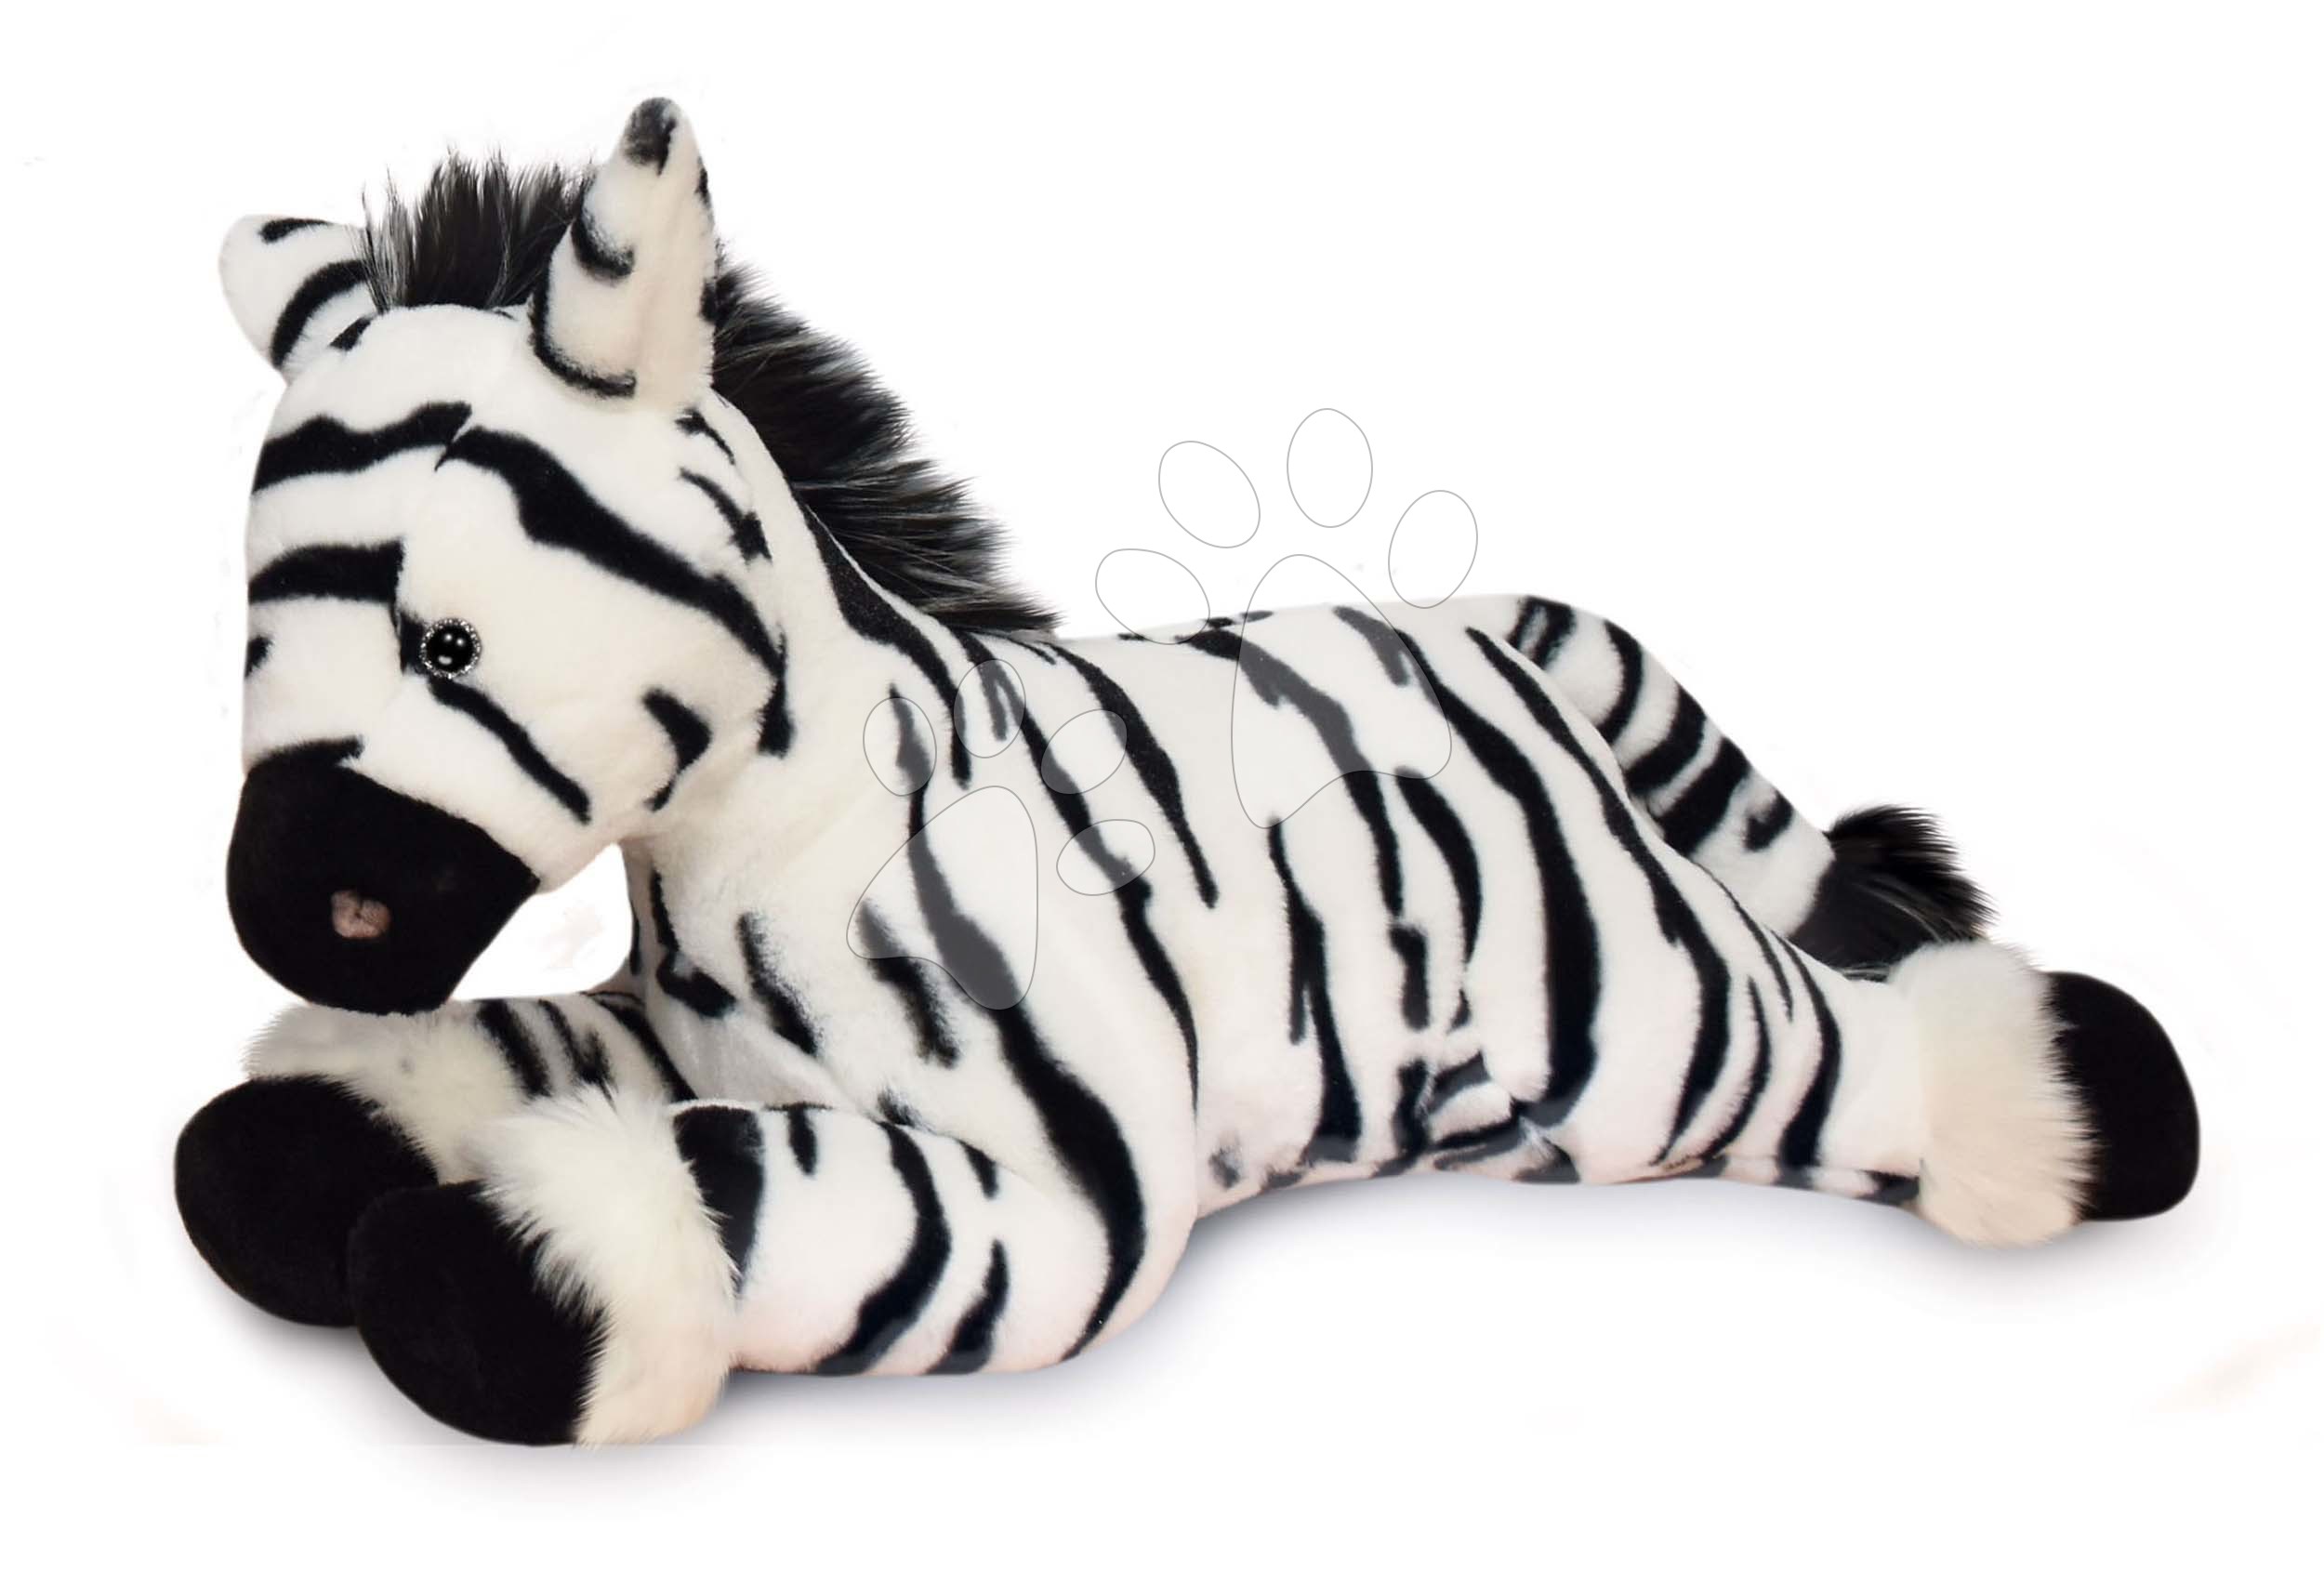 Plüss zebra Zephir the Zebra Histoire d’ Ours fekete-feher 35 cm ajándékcsomagolásban 0 hó-tól